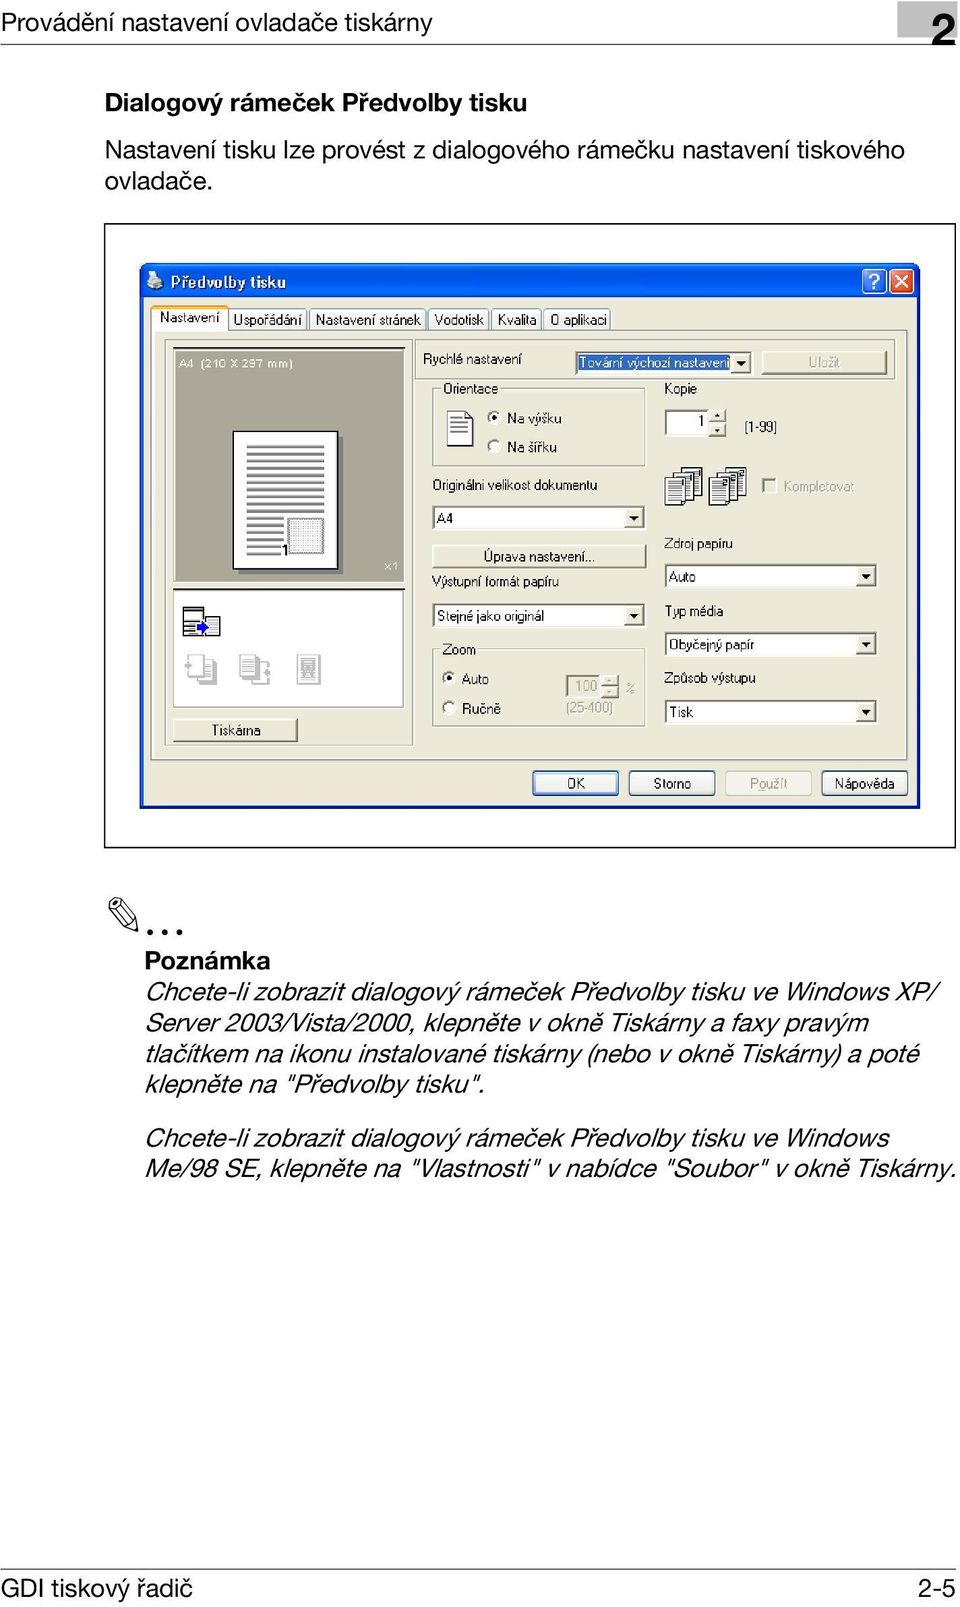 Poznámka Chcete-li zobrazit dialogový rámeček Předvolby tisku ve Windows XP/ Server 003/Vista/000, klepněte v okně Tiskárny a faxy